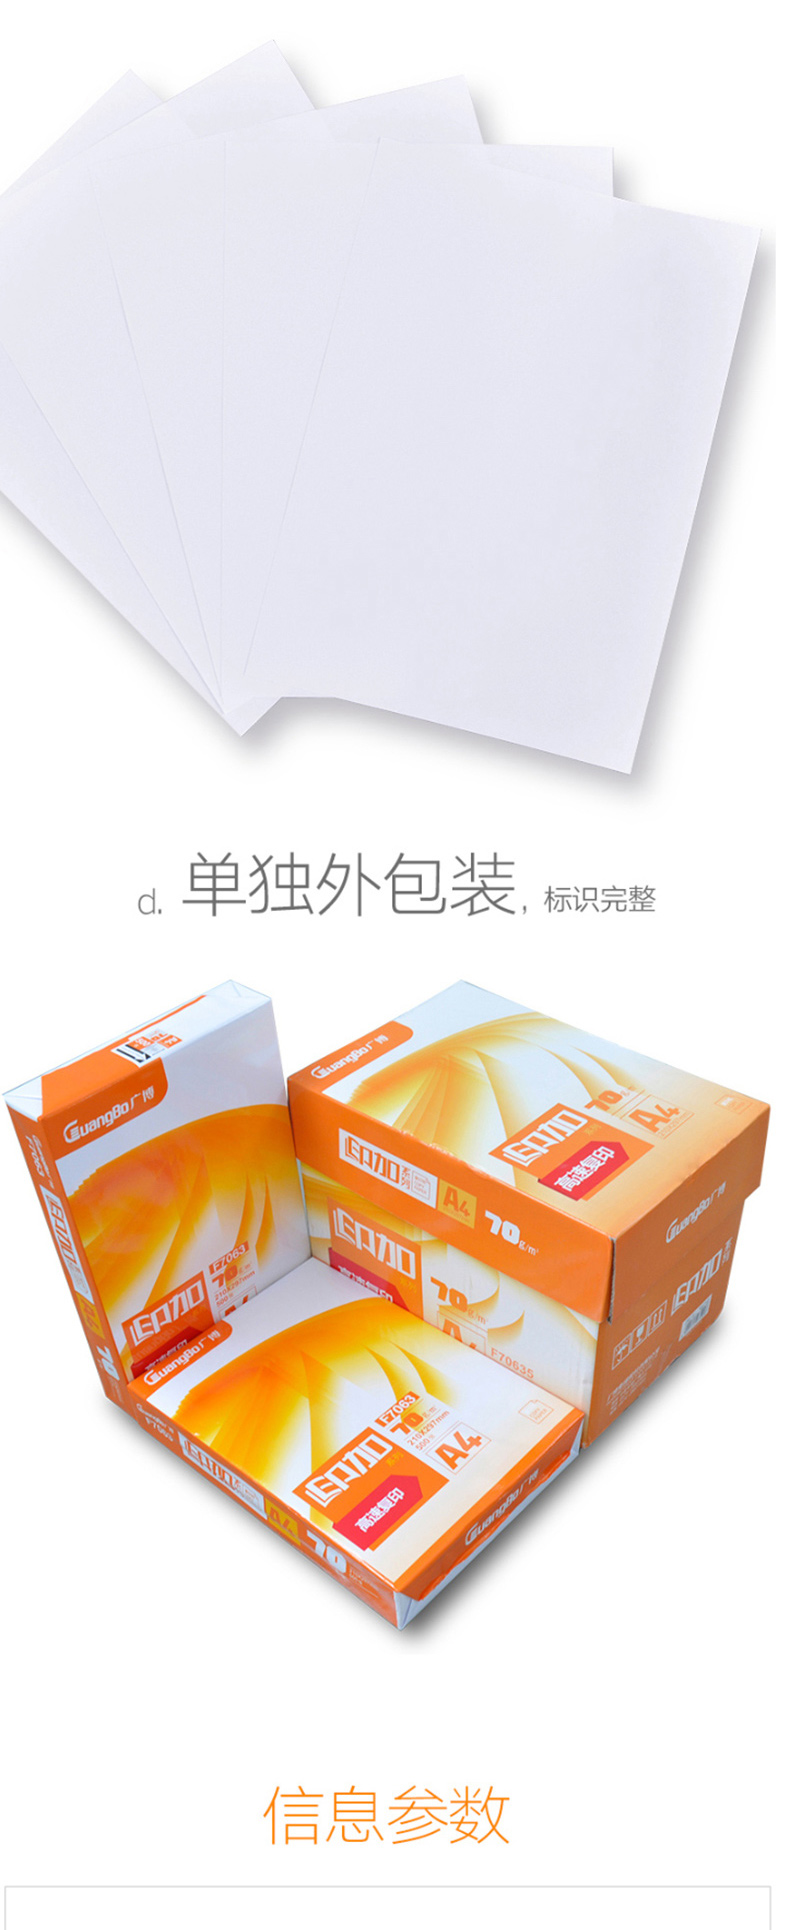 广博 复印纸 F7063 A4 70G 500张/包 5包/箱 (白色)